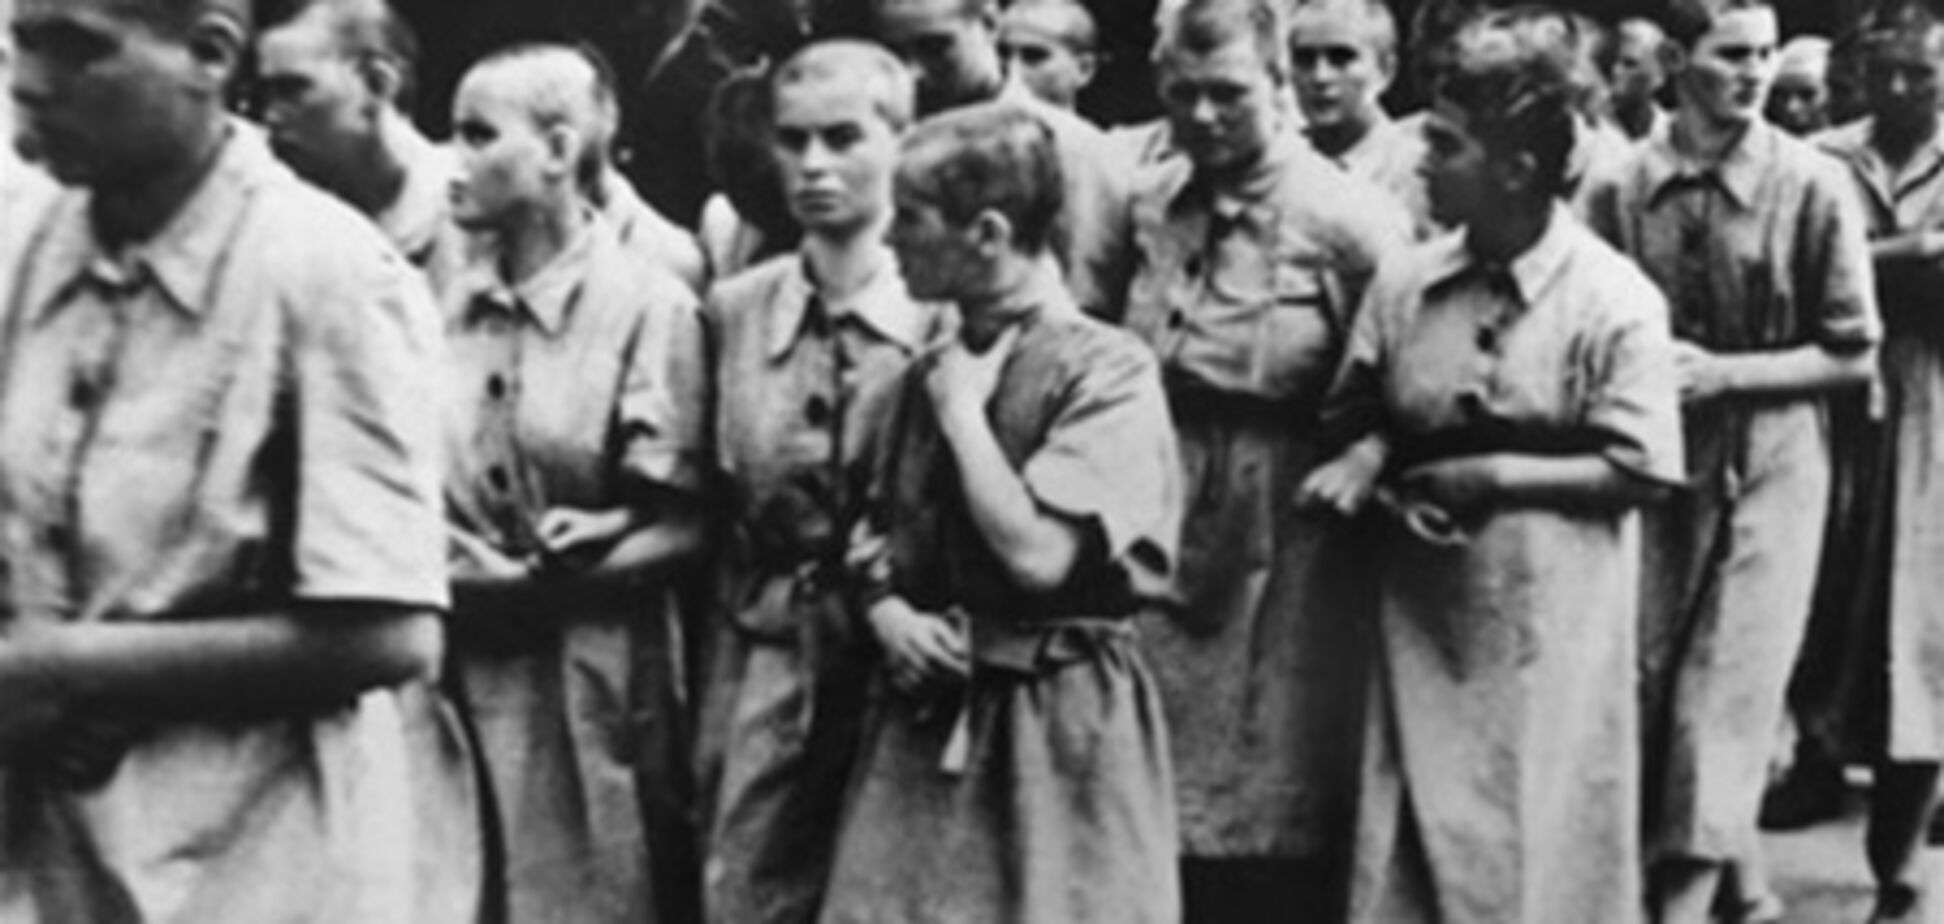 Надзирателя Освенцима обвинили в пособничестве убийству 9,5 тыс человек